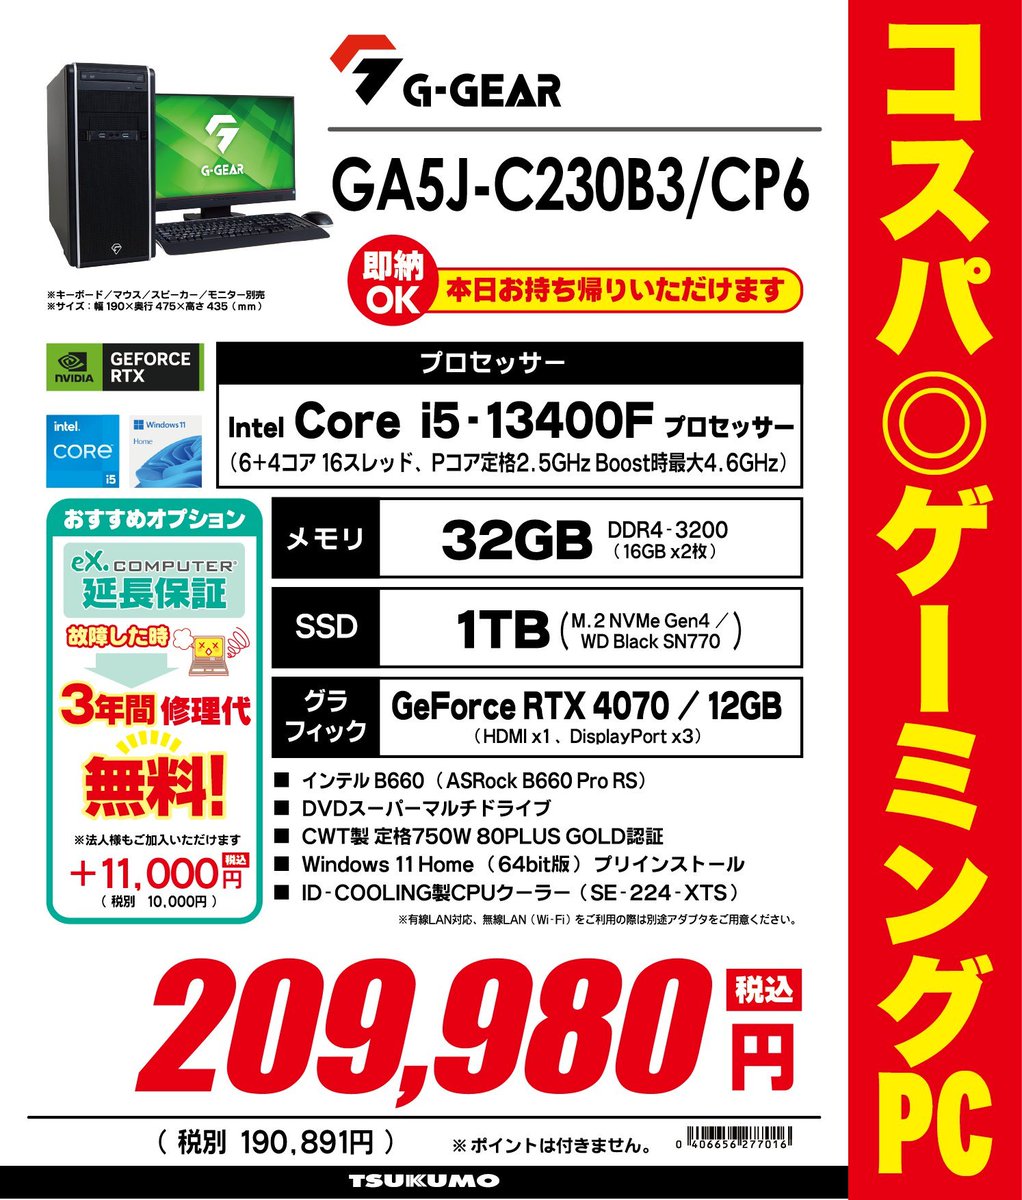 【1F】 即日お持ち帰り可能なゲーミングデスクトップPCがこちら！ 'G-GEAR GA5J-C230B3/CP6' 税込209,980円 ・intel Core i5-13400F / メモリ 32GB ・GeForce RTX 4070 多くのゲームを快適に遊べちゃうゲーム性能 最新ゲームに対応できるよう買い替えたい方にもオススメです！